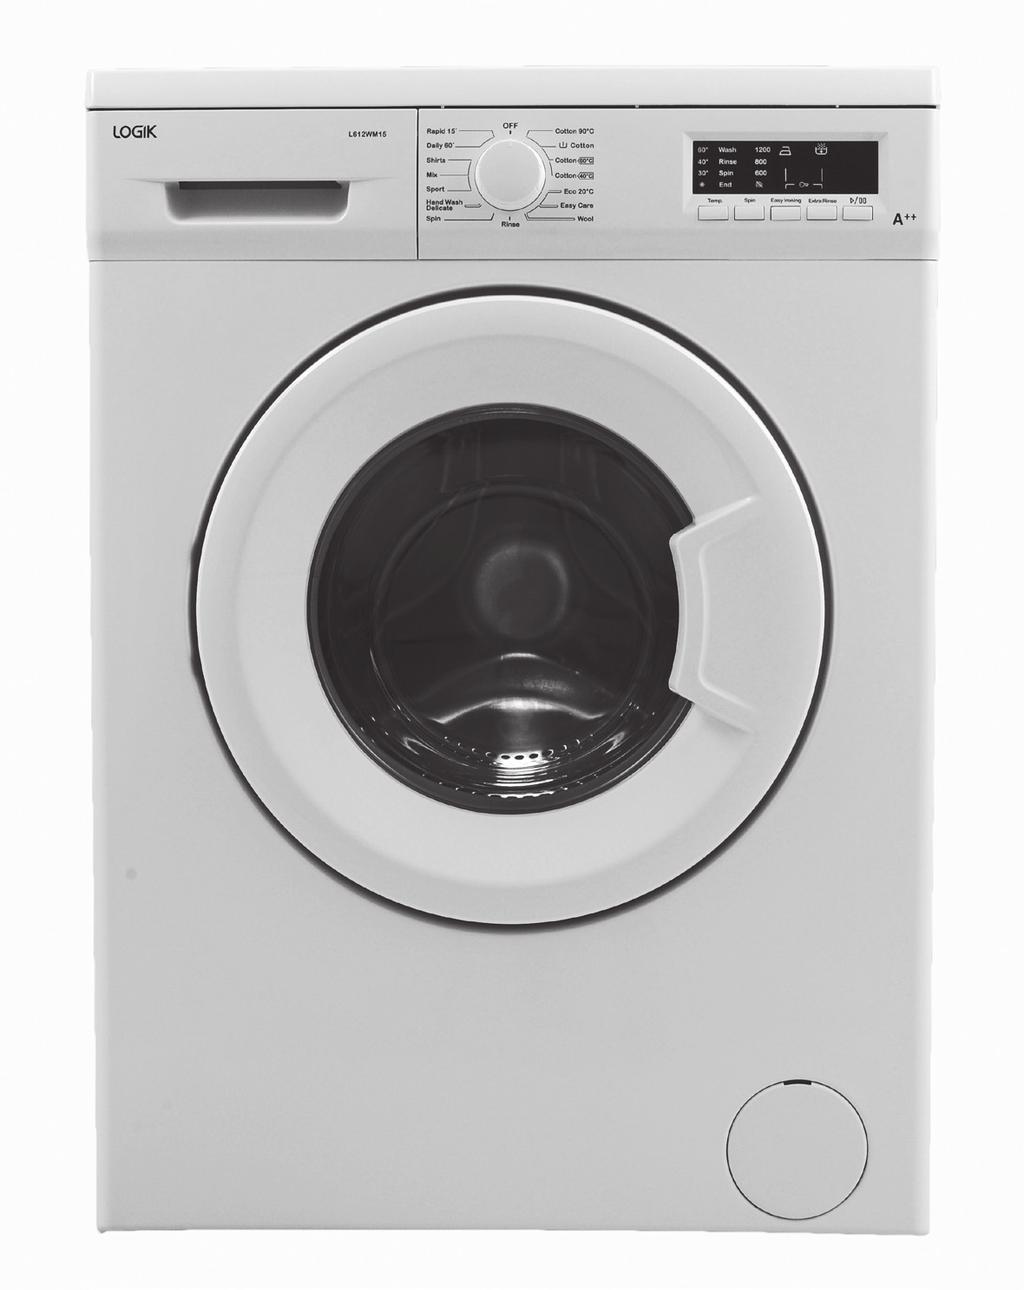 Instruction Manual 6kg Washing Machine